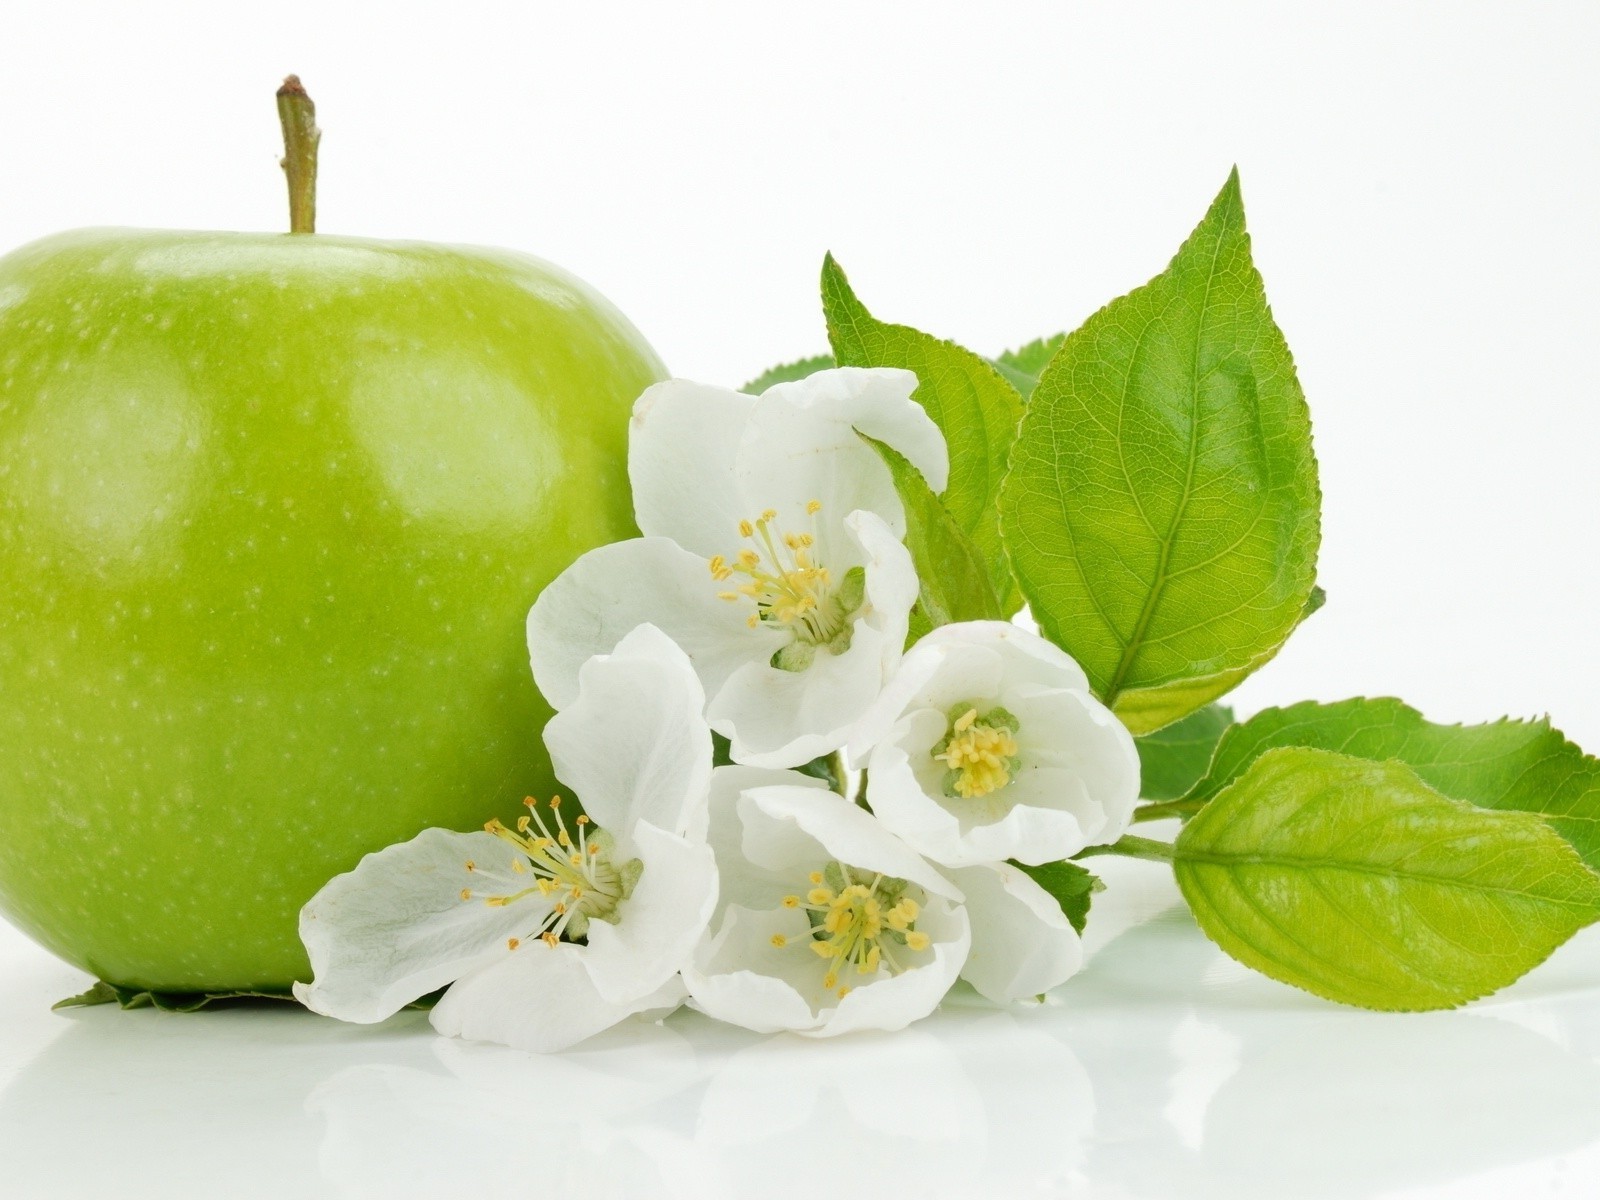 Поиск обоев яблоко свежесть зелень в разделе все категории.